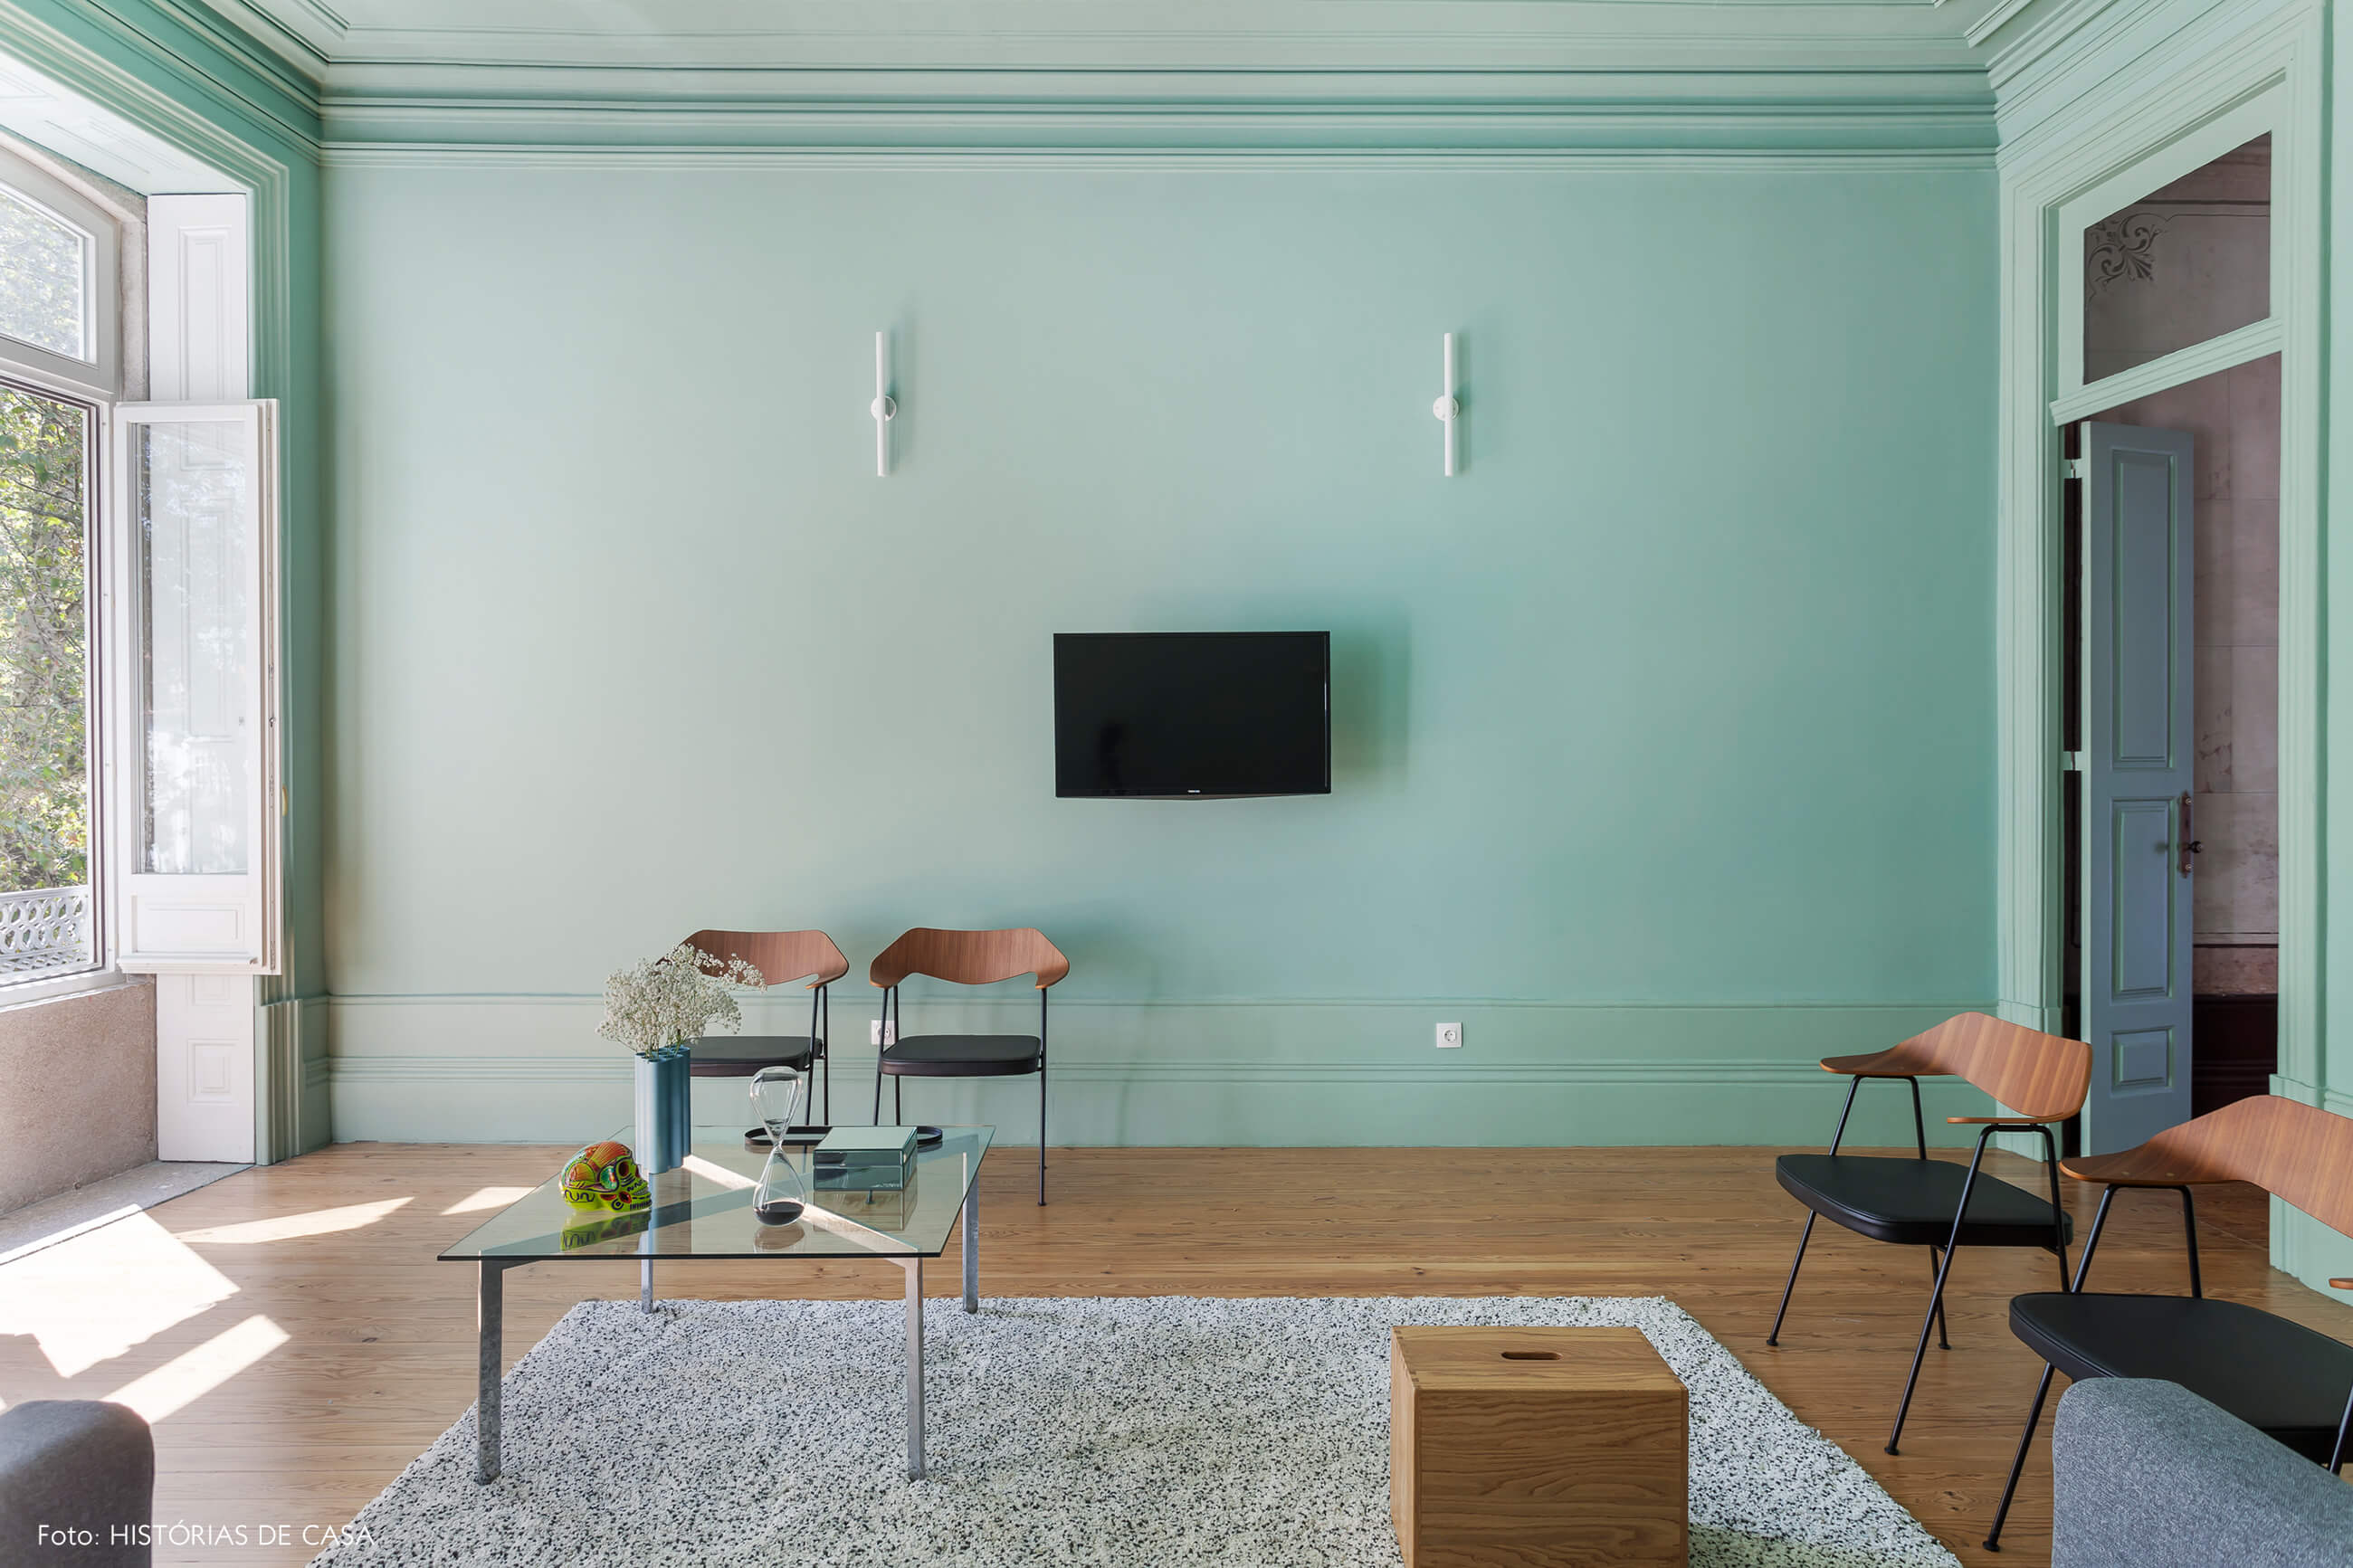 Apartamento com sala pintada de verde